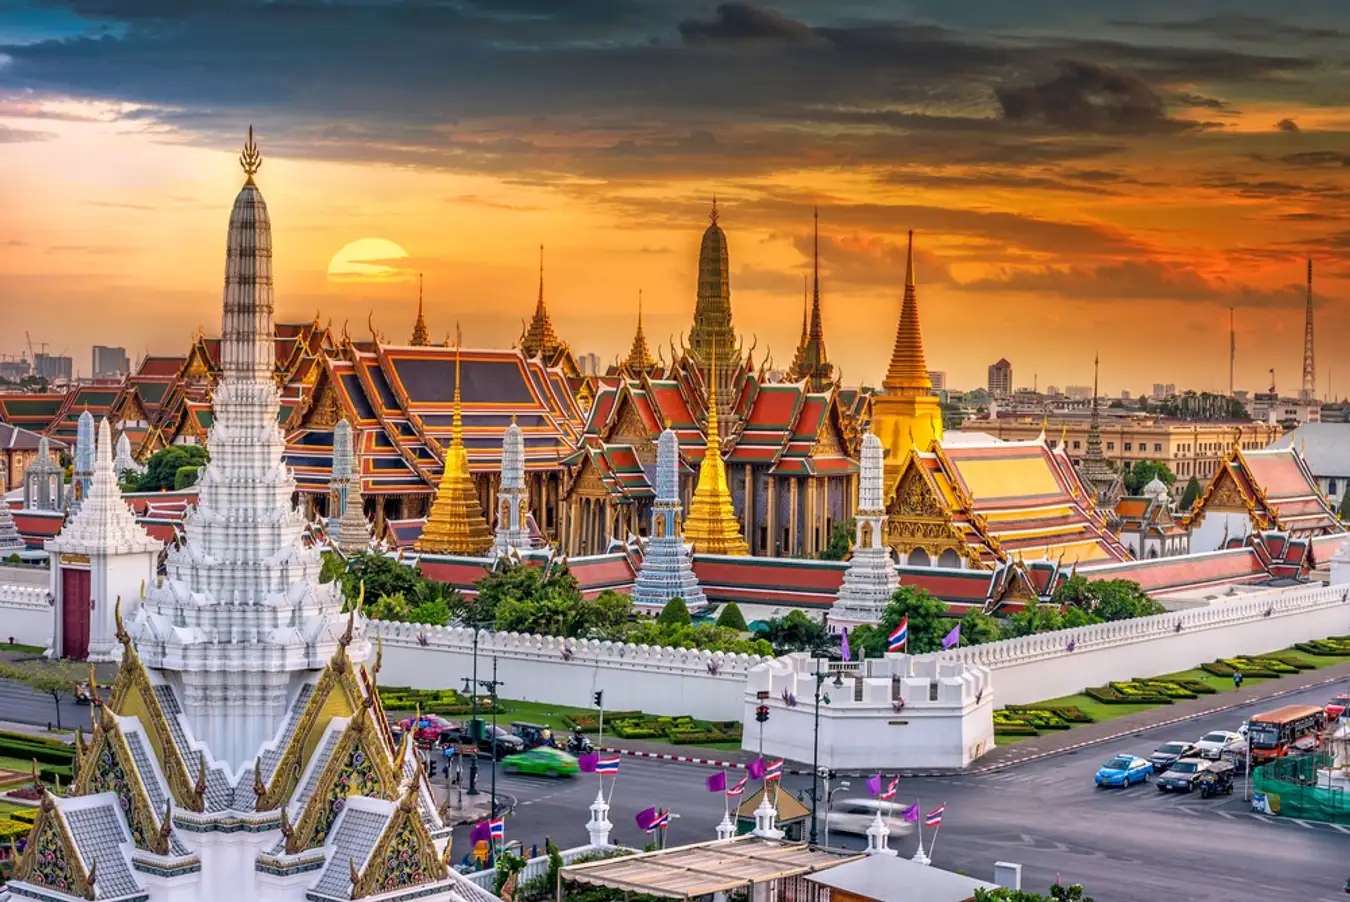 Bangkok nổi tiếng với những tòa nhà chọc trời, những trung tâm mua sắm hiện đại. 